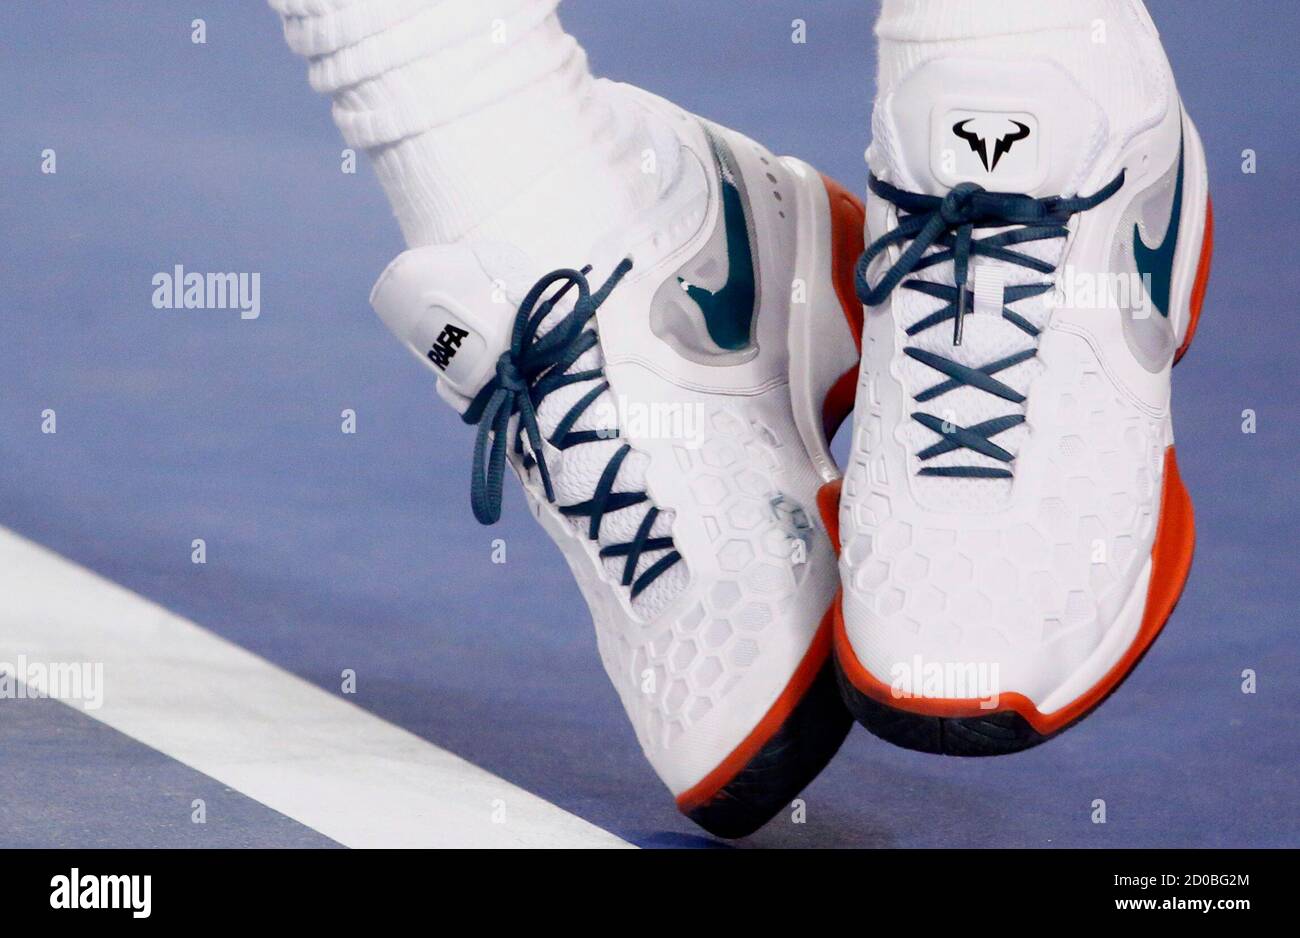 La palabra 'Rafa' y el logotipo de un toro se ven en Rafael Nadal de España  par de zapatillas Nike mientras sirve a Thanasi Kokkinakis de Australia  durante su partido de singles